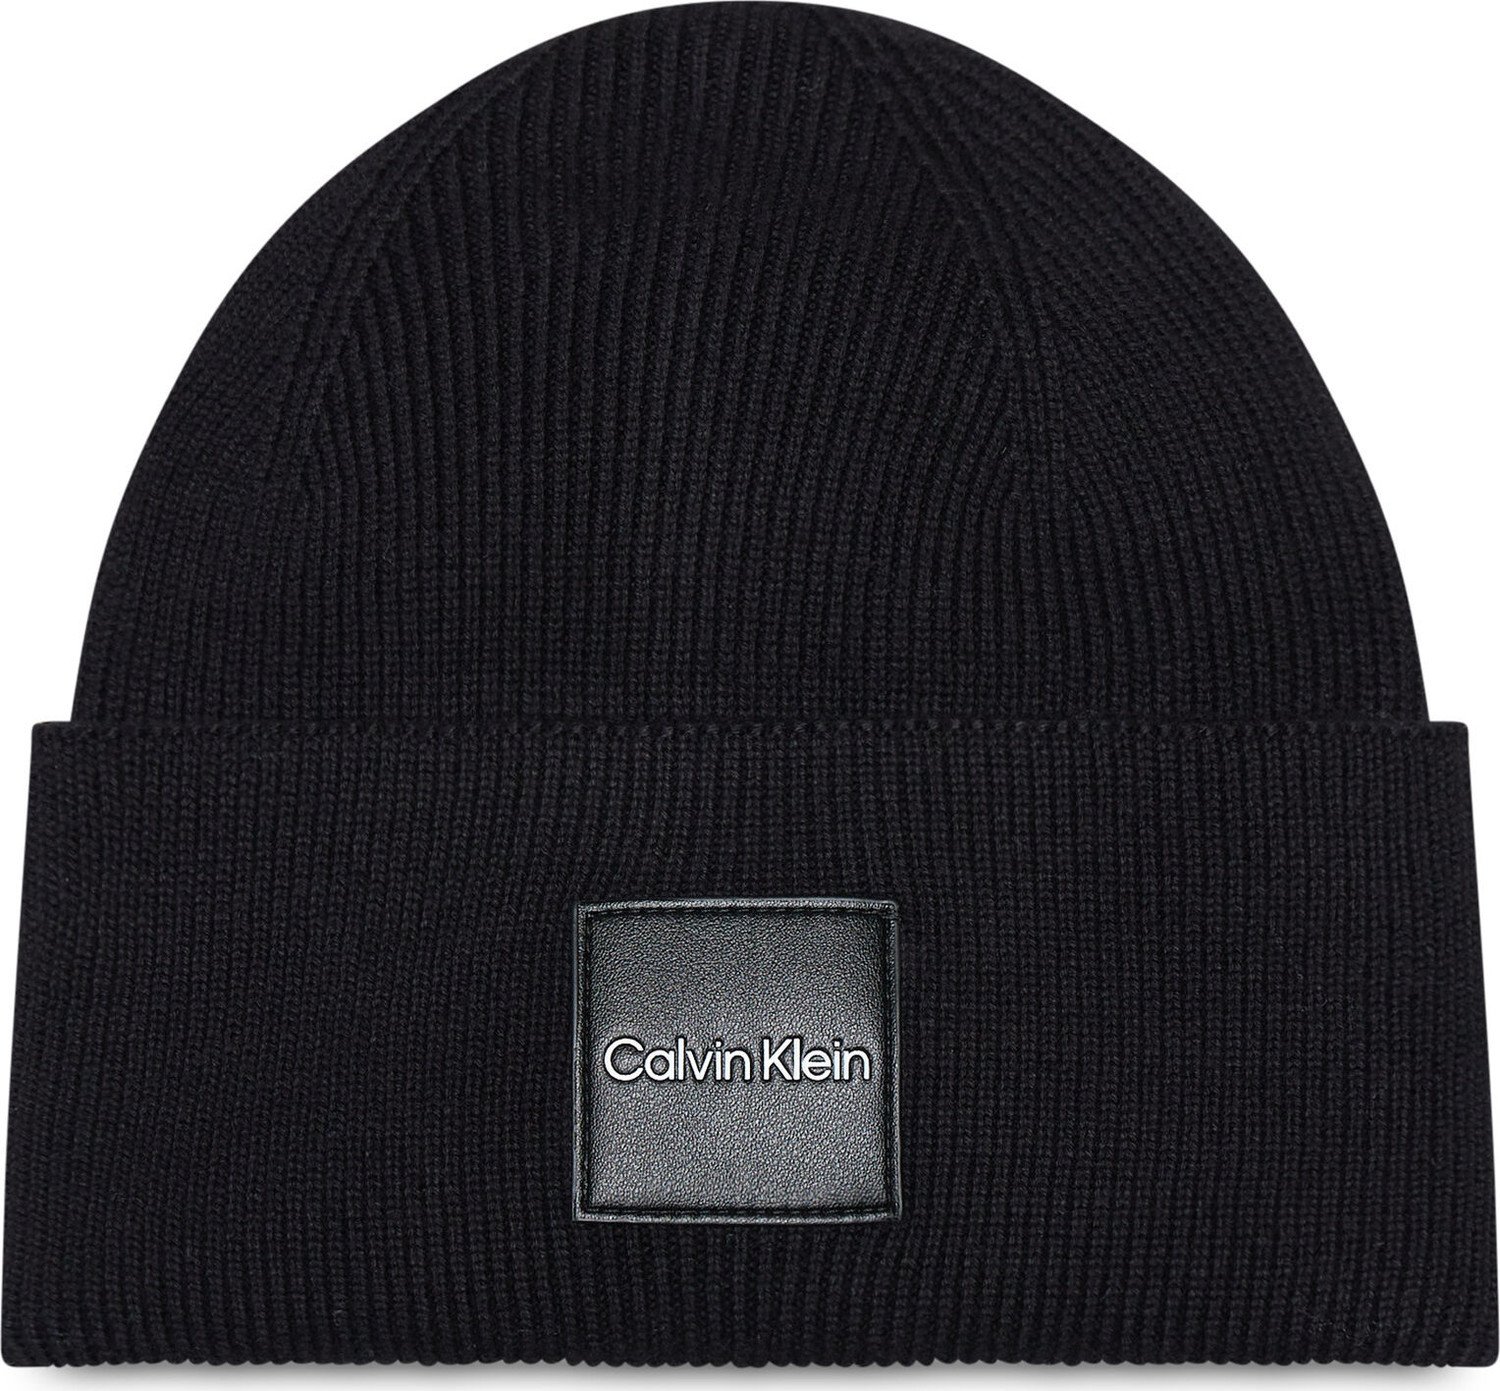 Čepice Calvin Klein K50K509682BAX Ck Black BLK